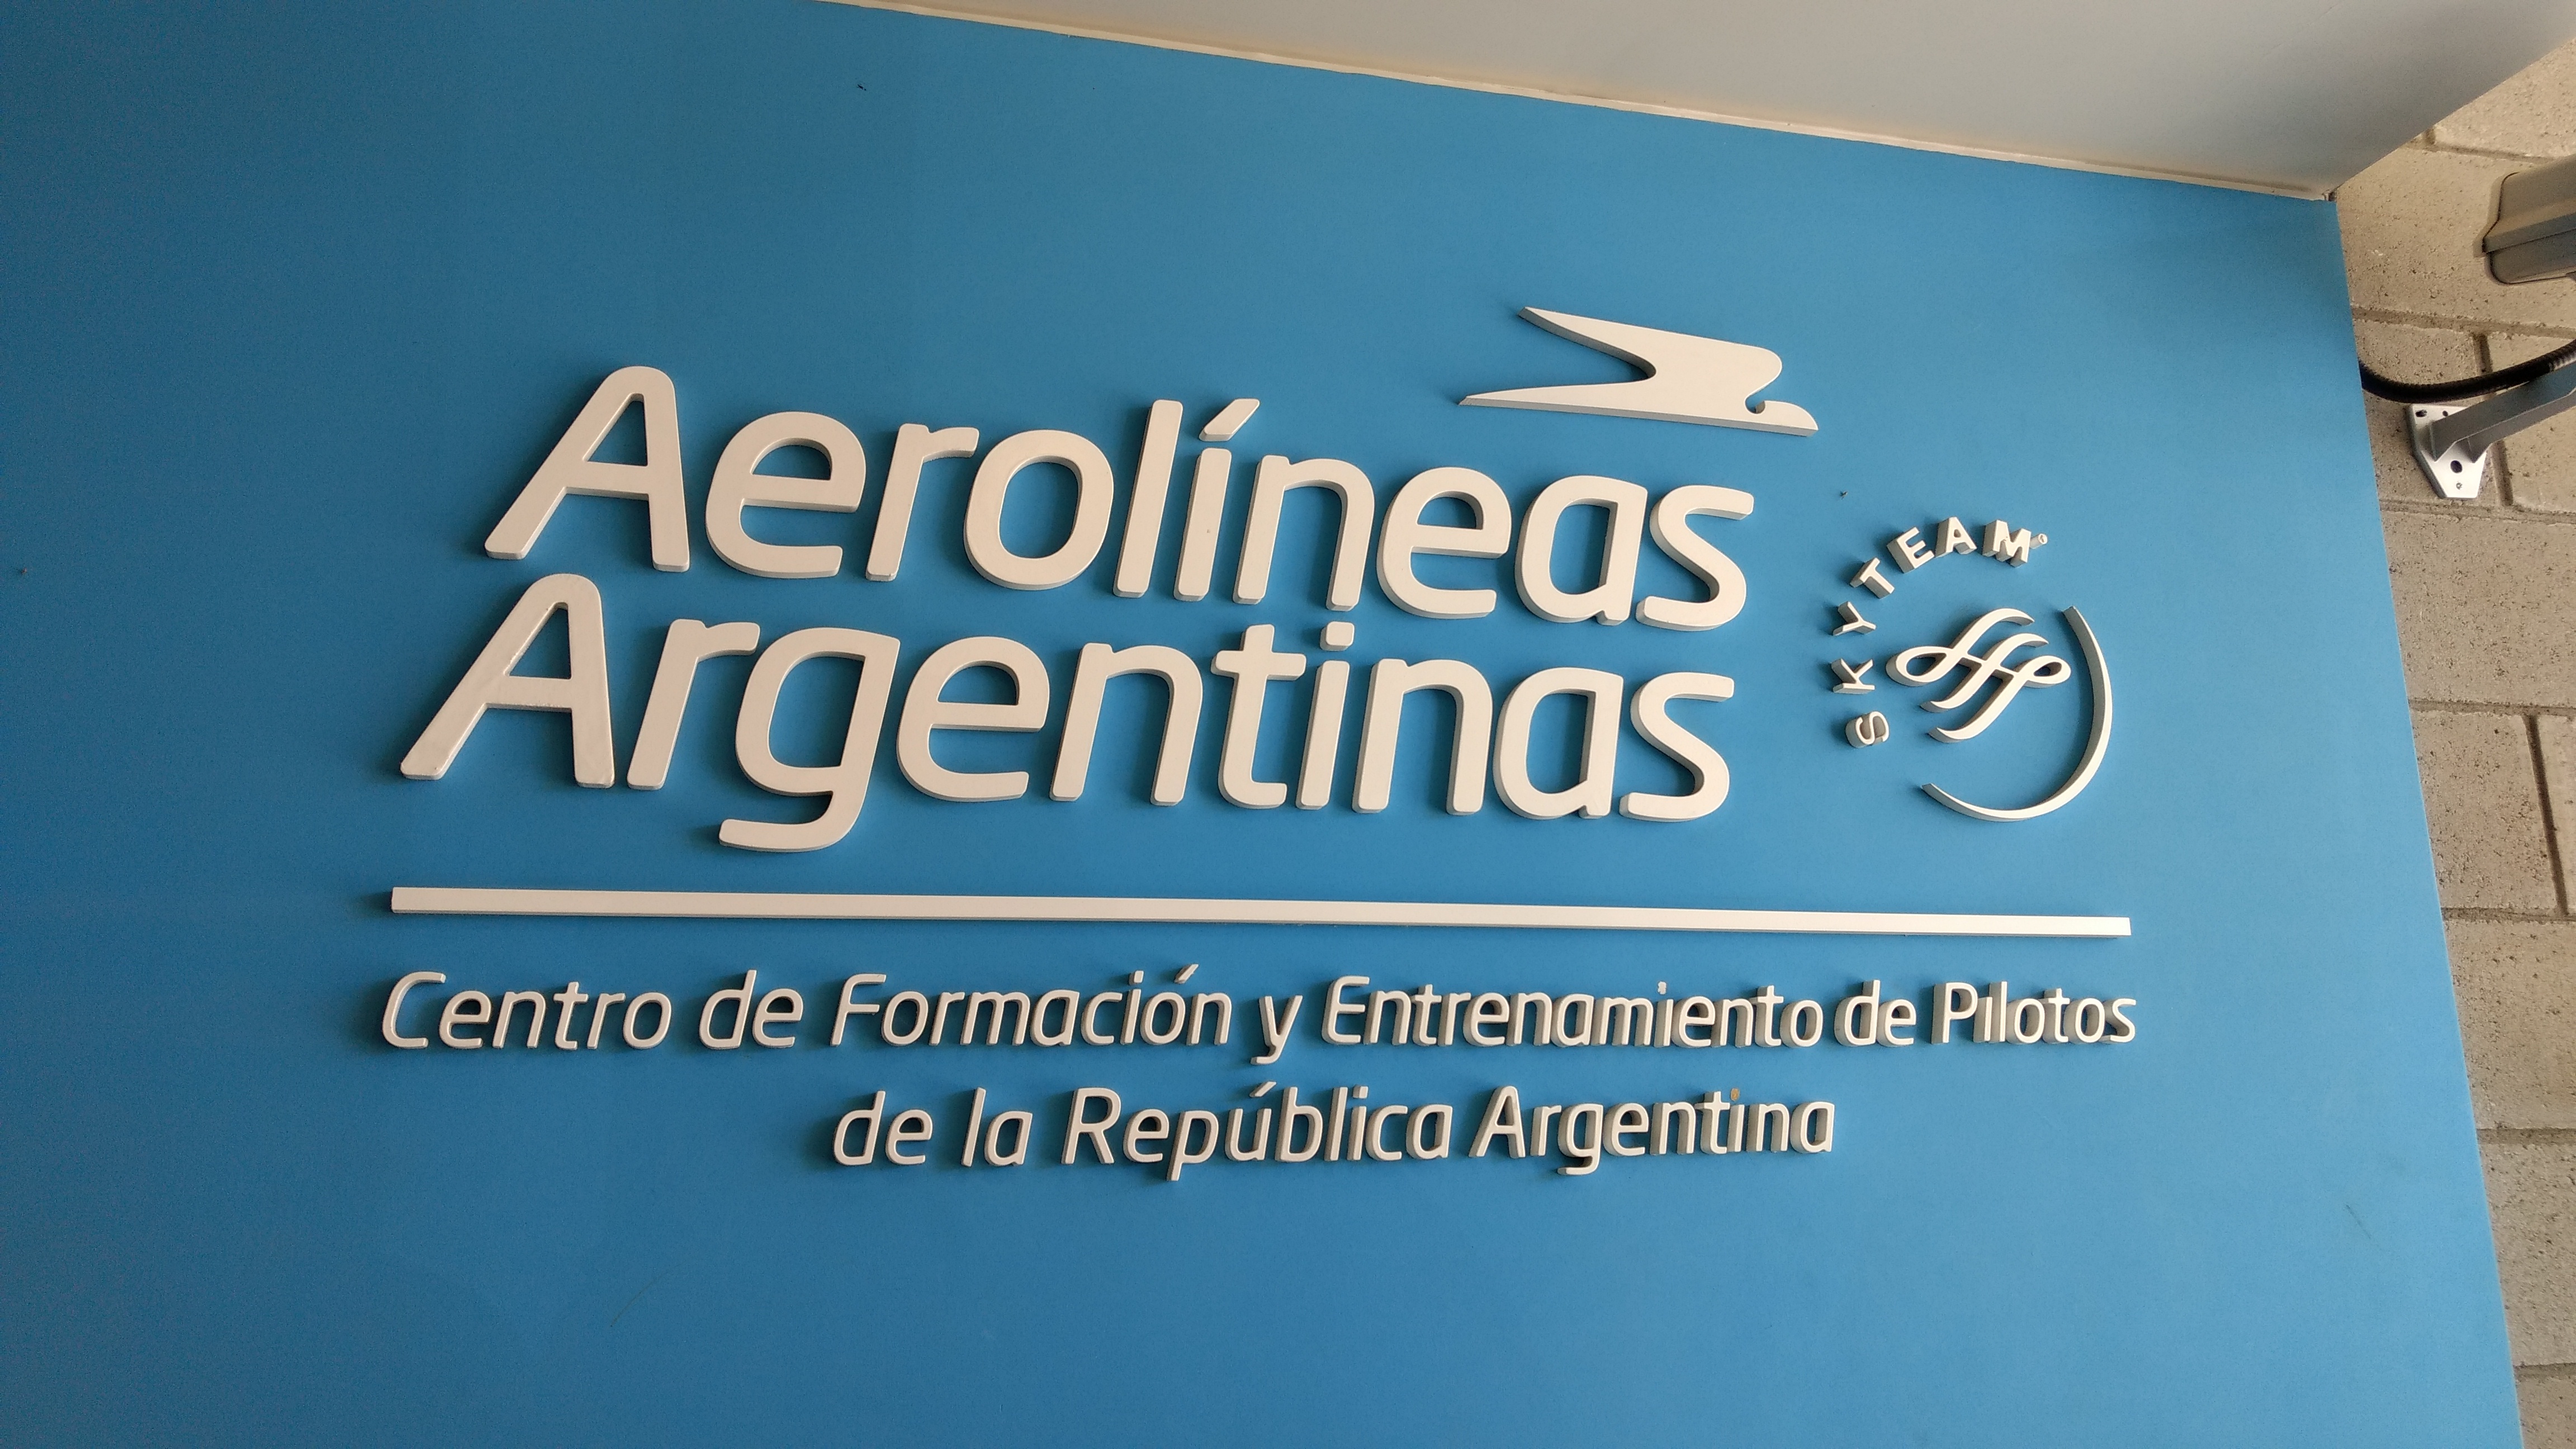 Visita al CeFePra (Centro de Formacion y Entrenamiento de Pilotos de la Republica Argentina